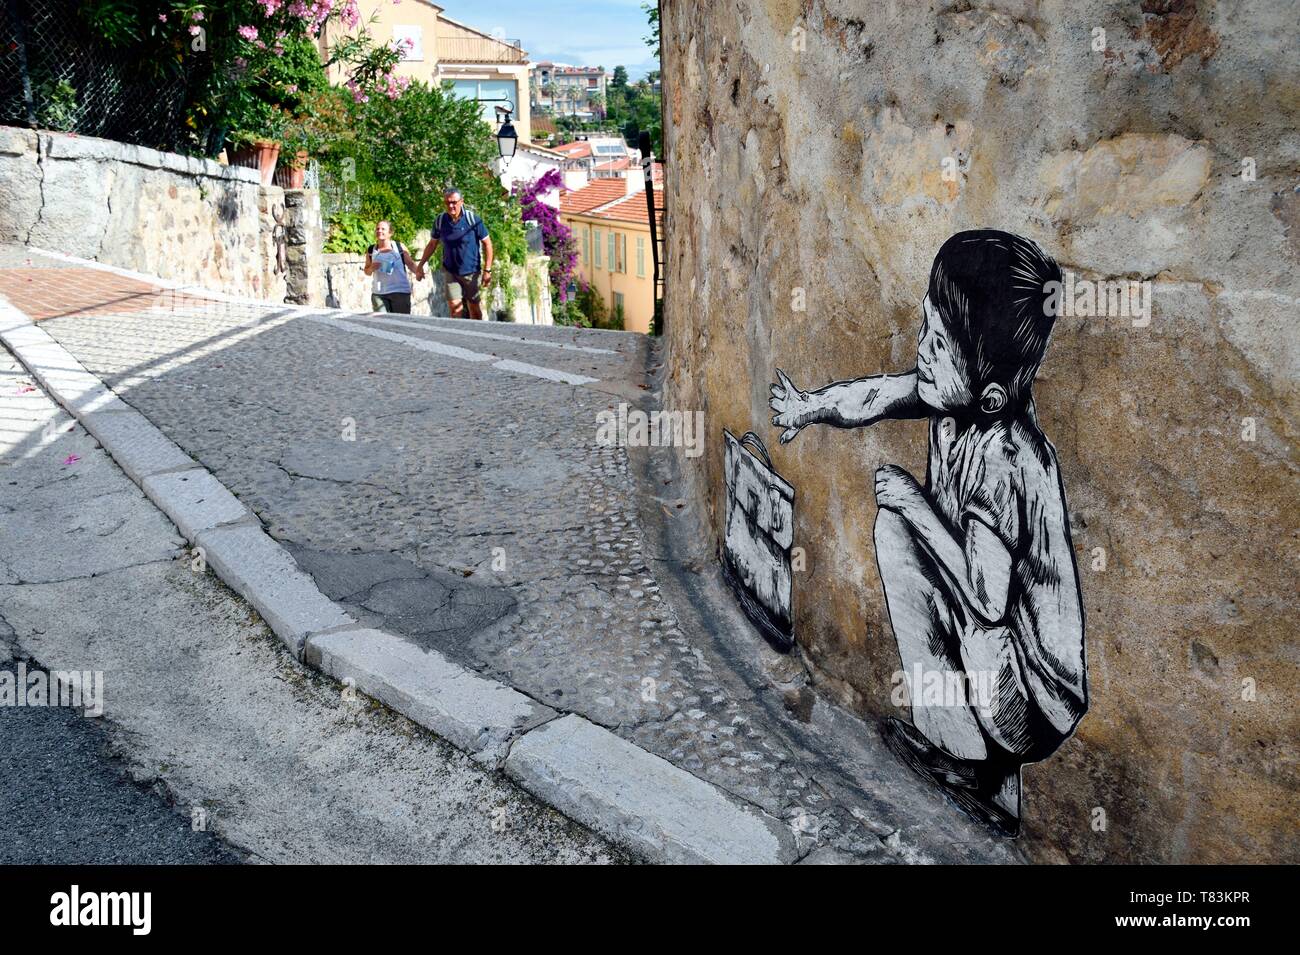 France, Alpes Maritimes, Cannes, la vieille ville du Suquet, Olivia Paroldi street art Banque D'Images